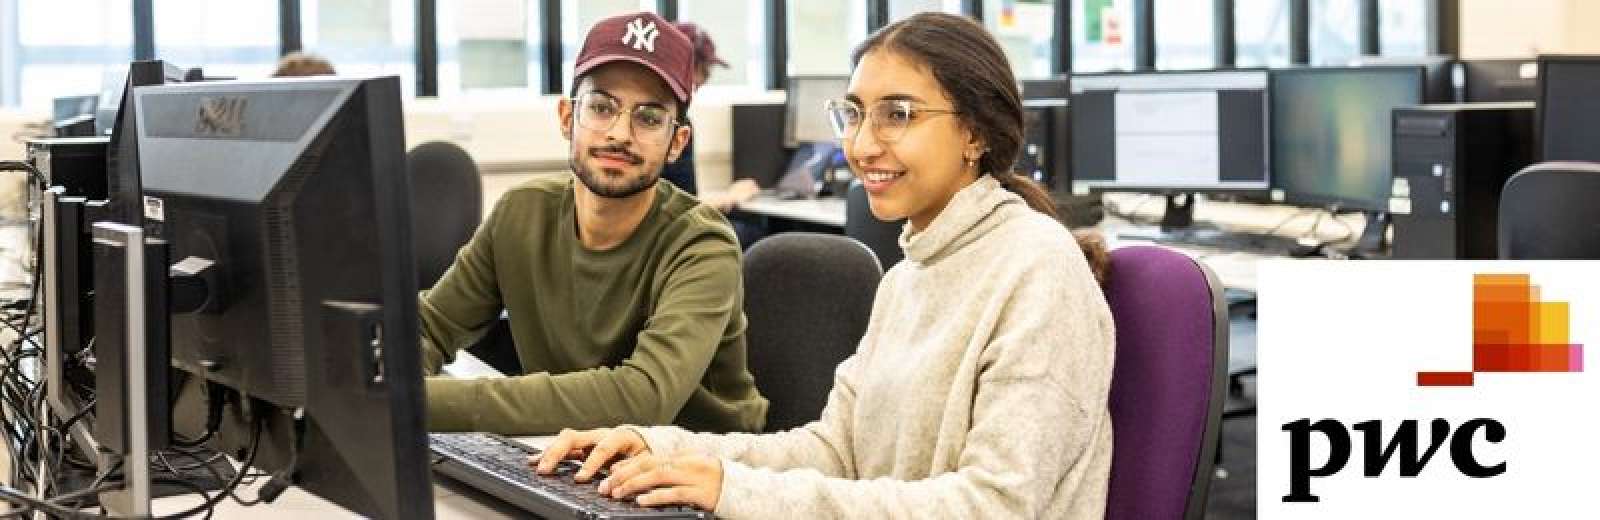 Computing students looking at computer